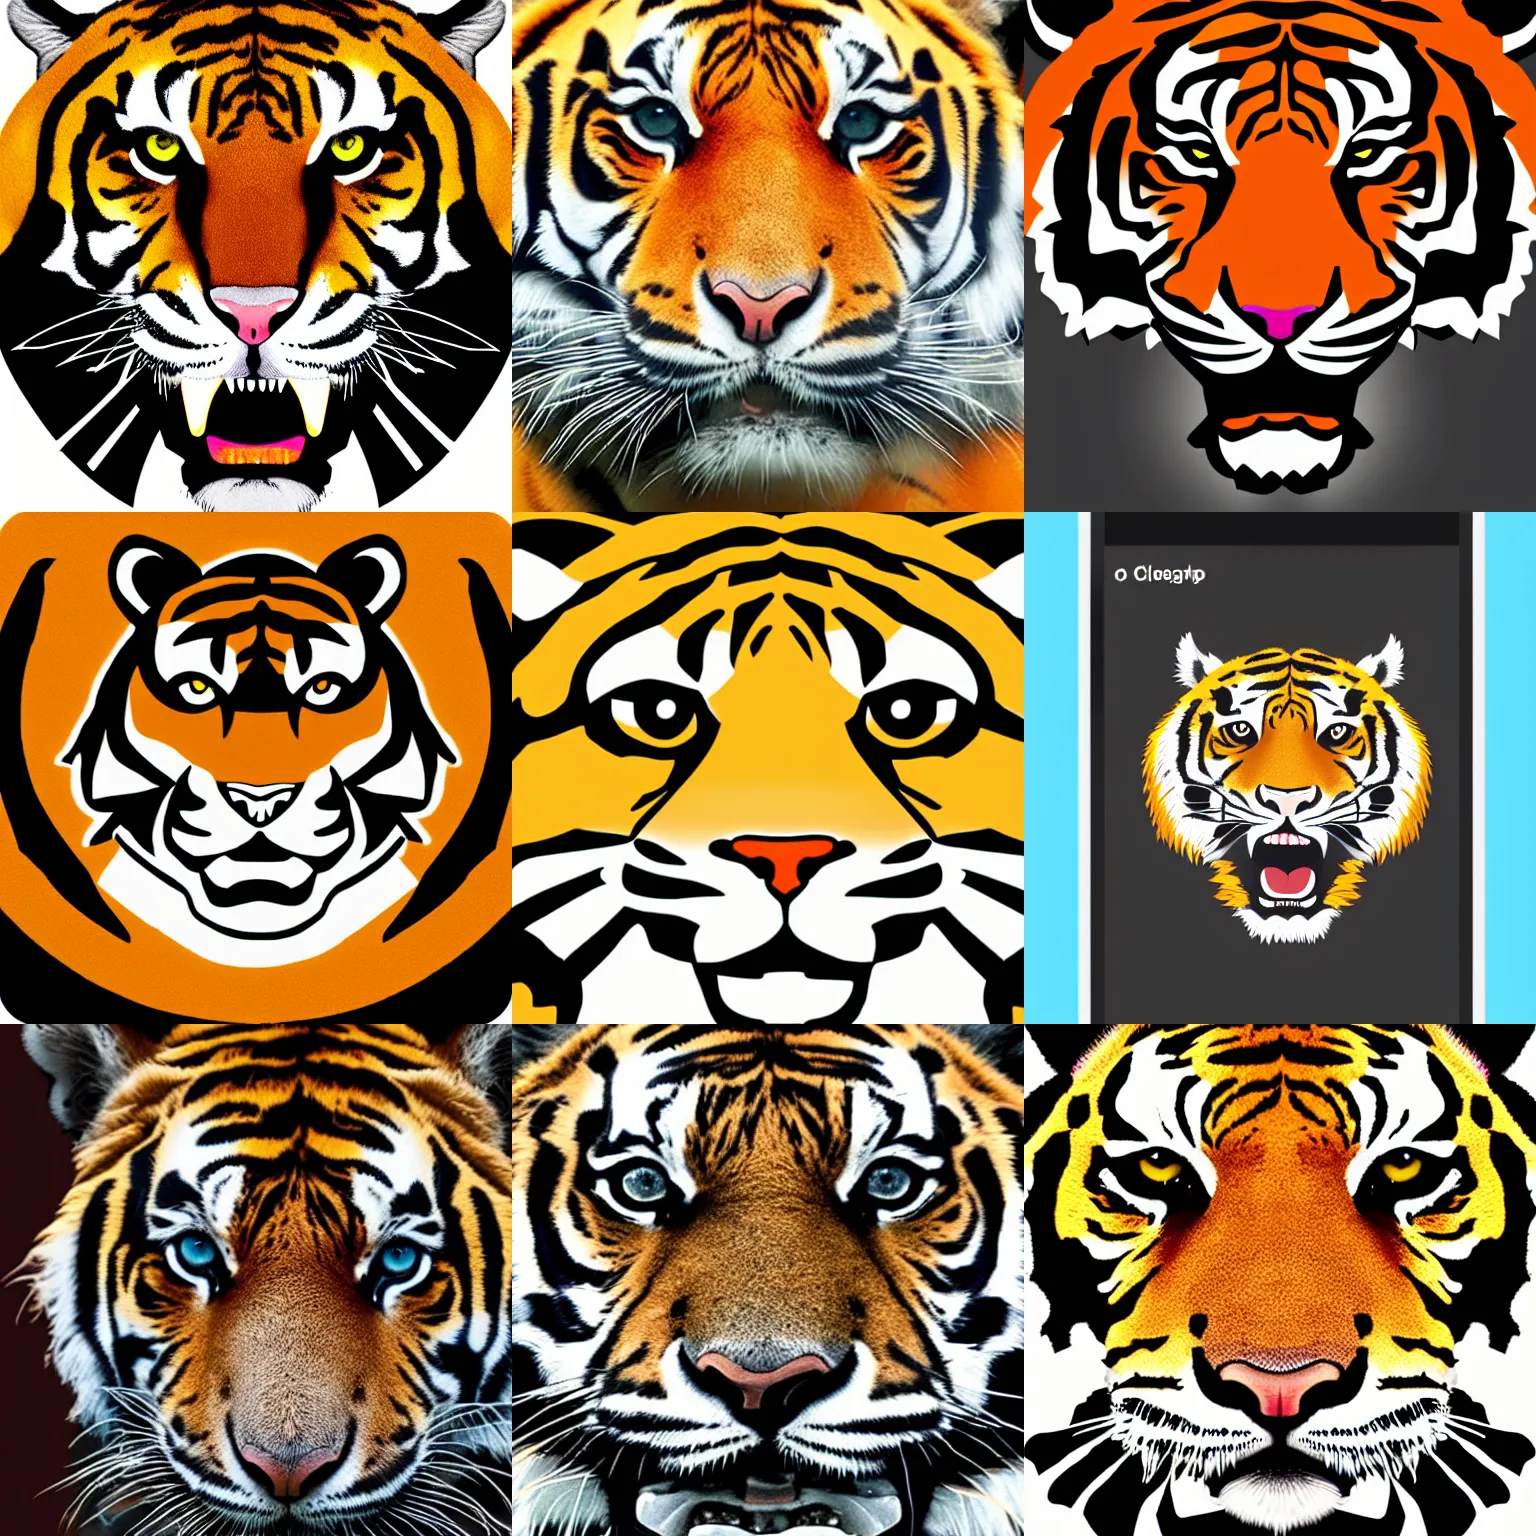 Prompt: a tiger head, app logo, clean design